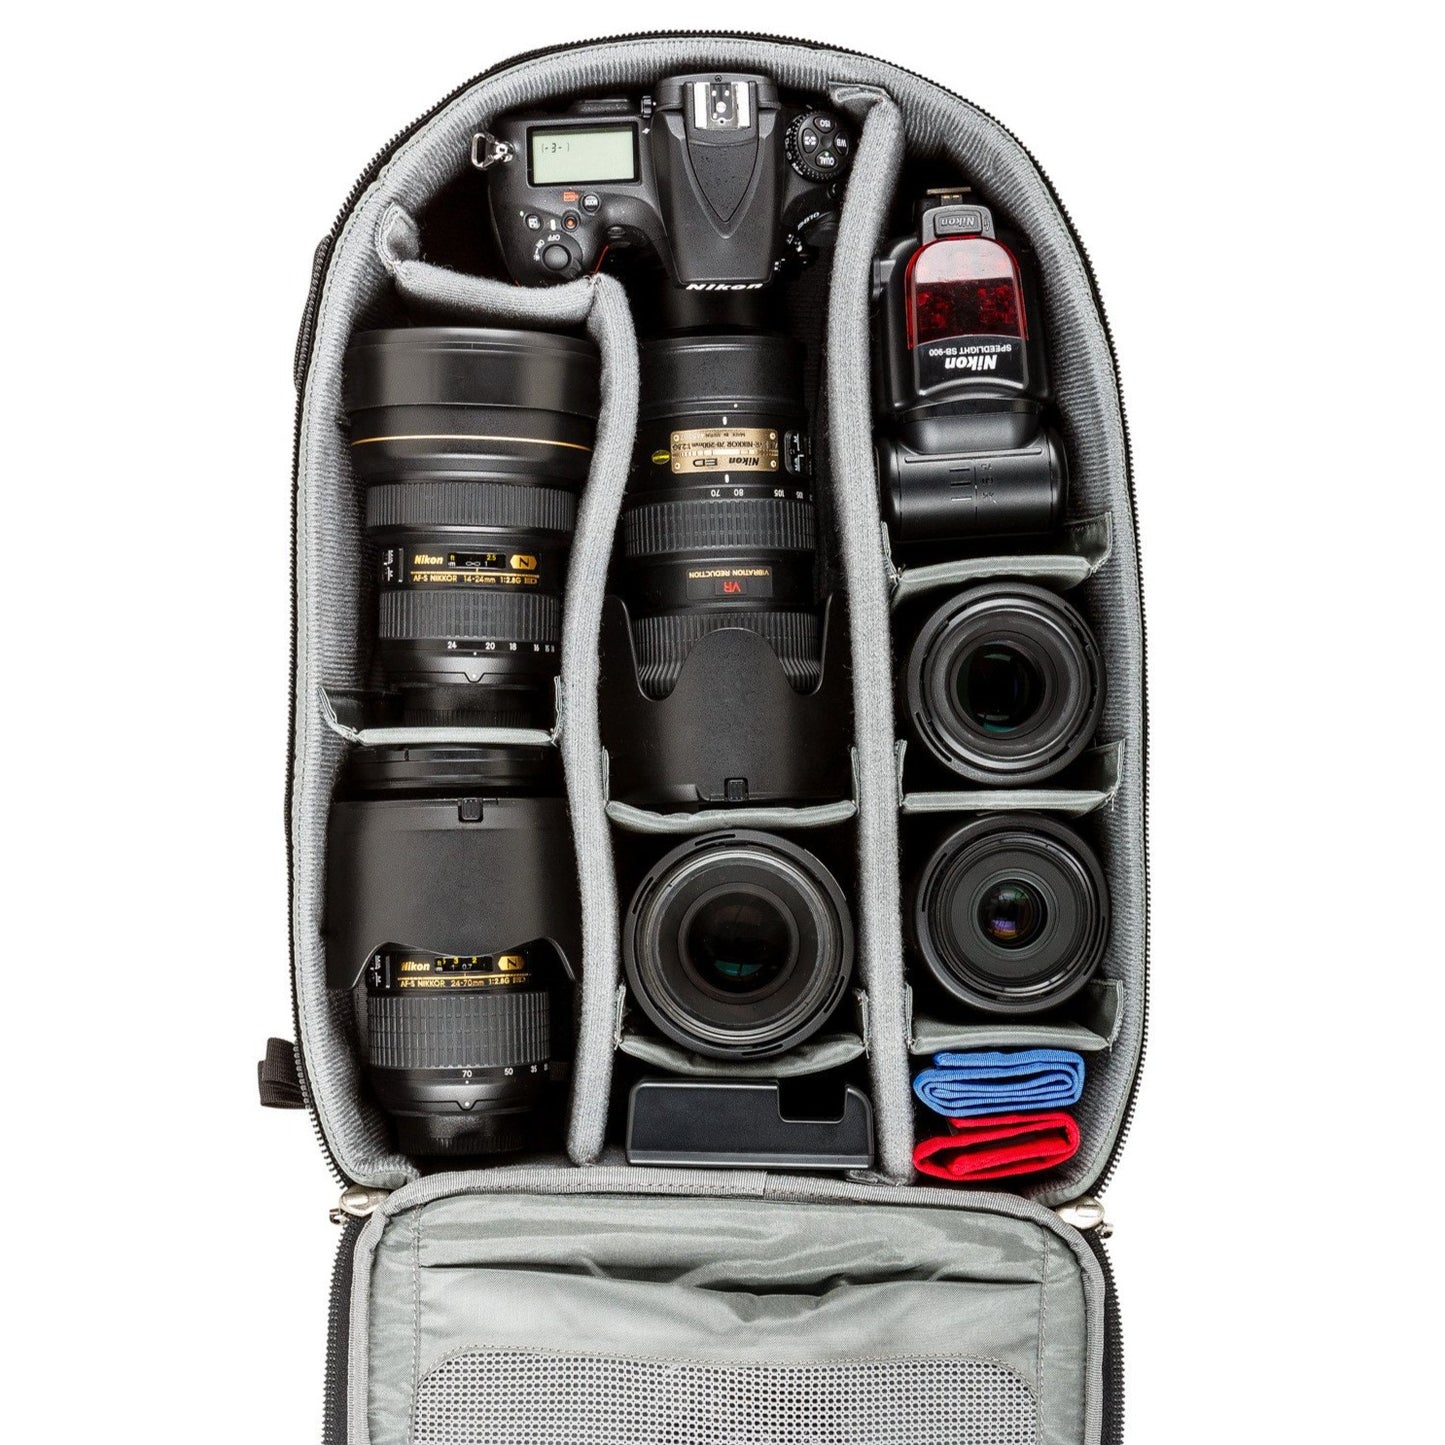 Nikon D810+70-200mm f/2.8, 14-24mm f/2.8, 24-70mm f/2.8, three additional lenses, flash